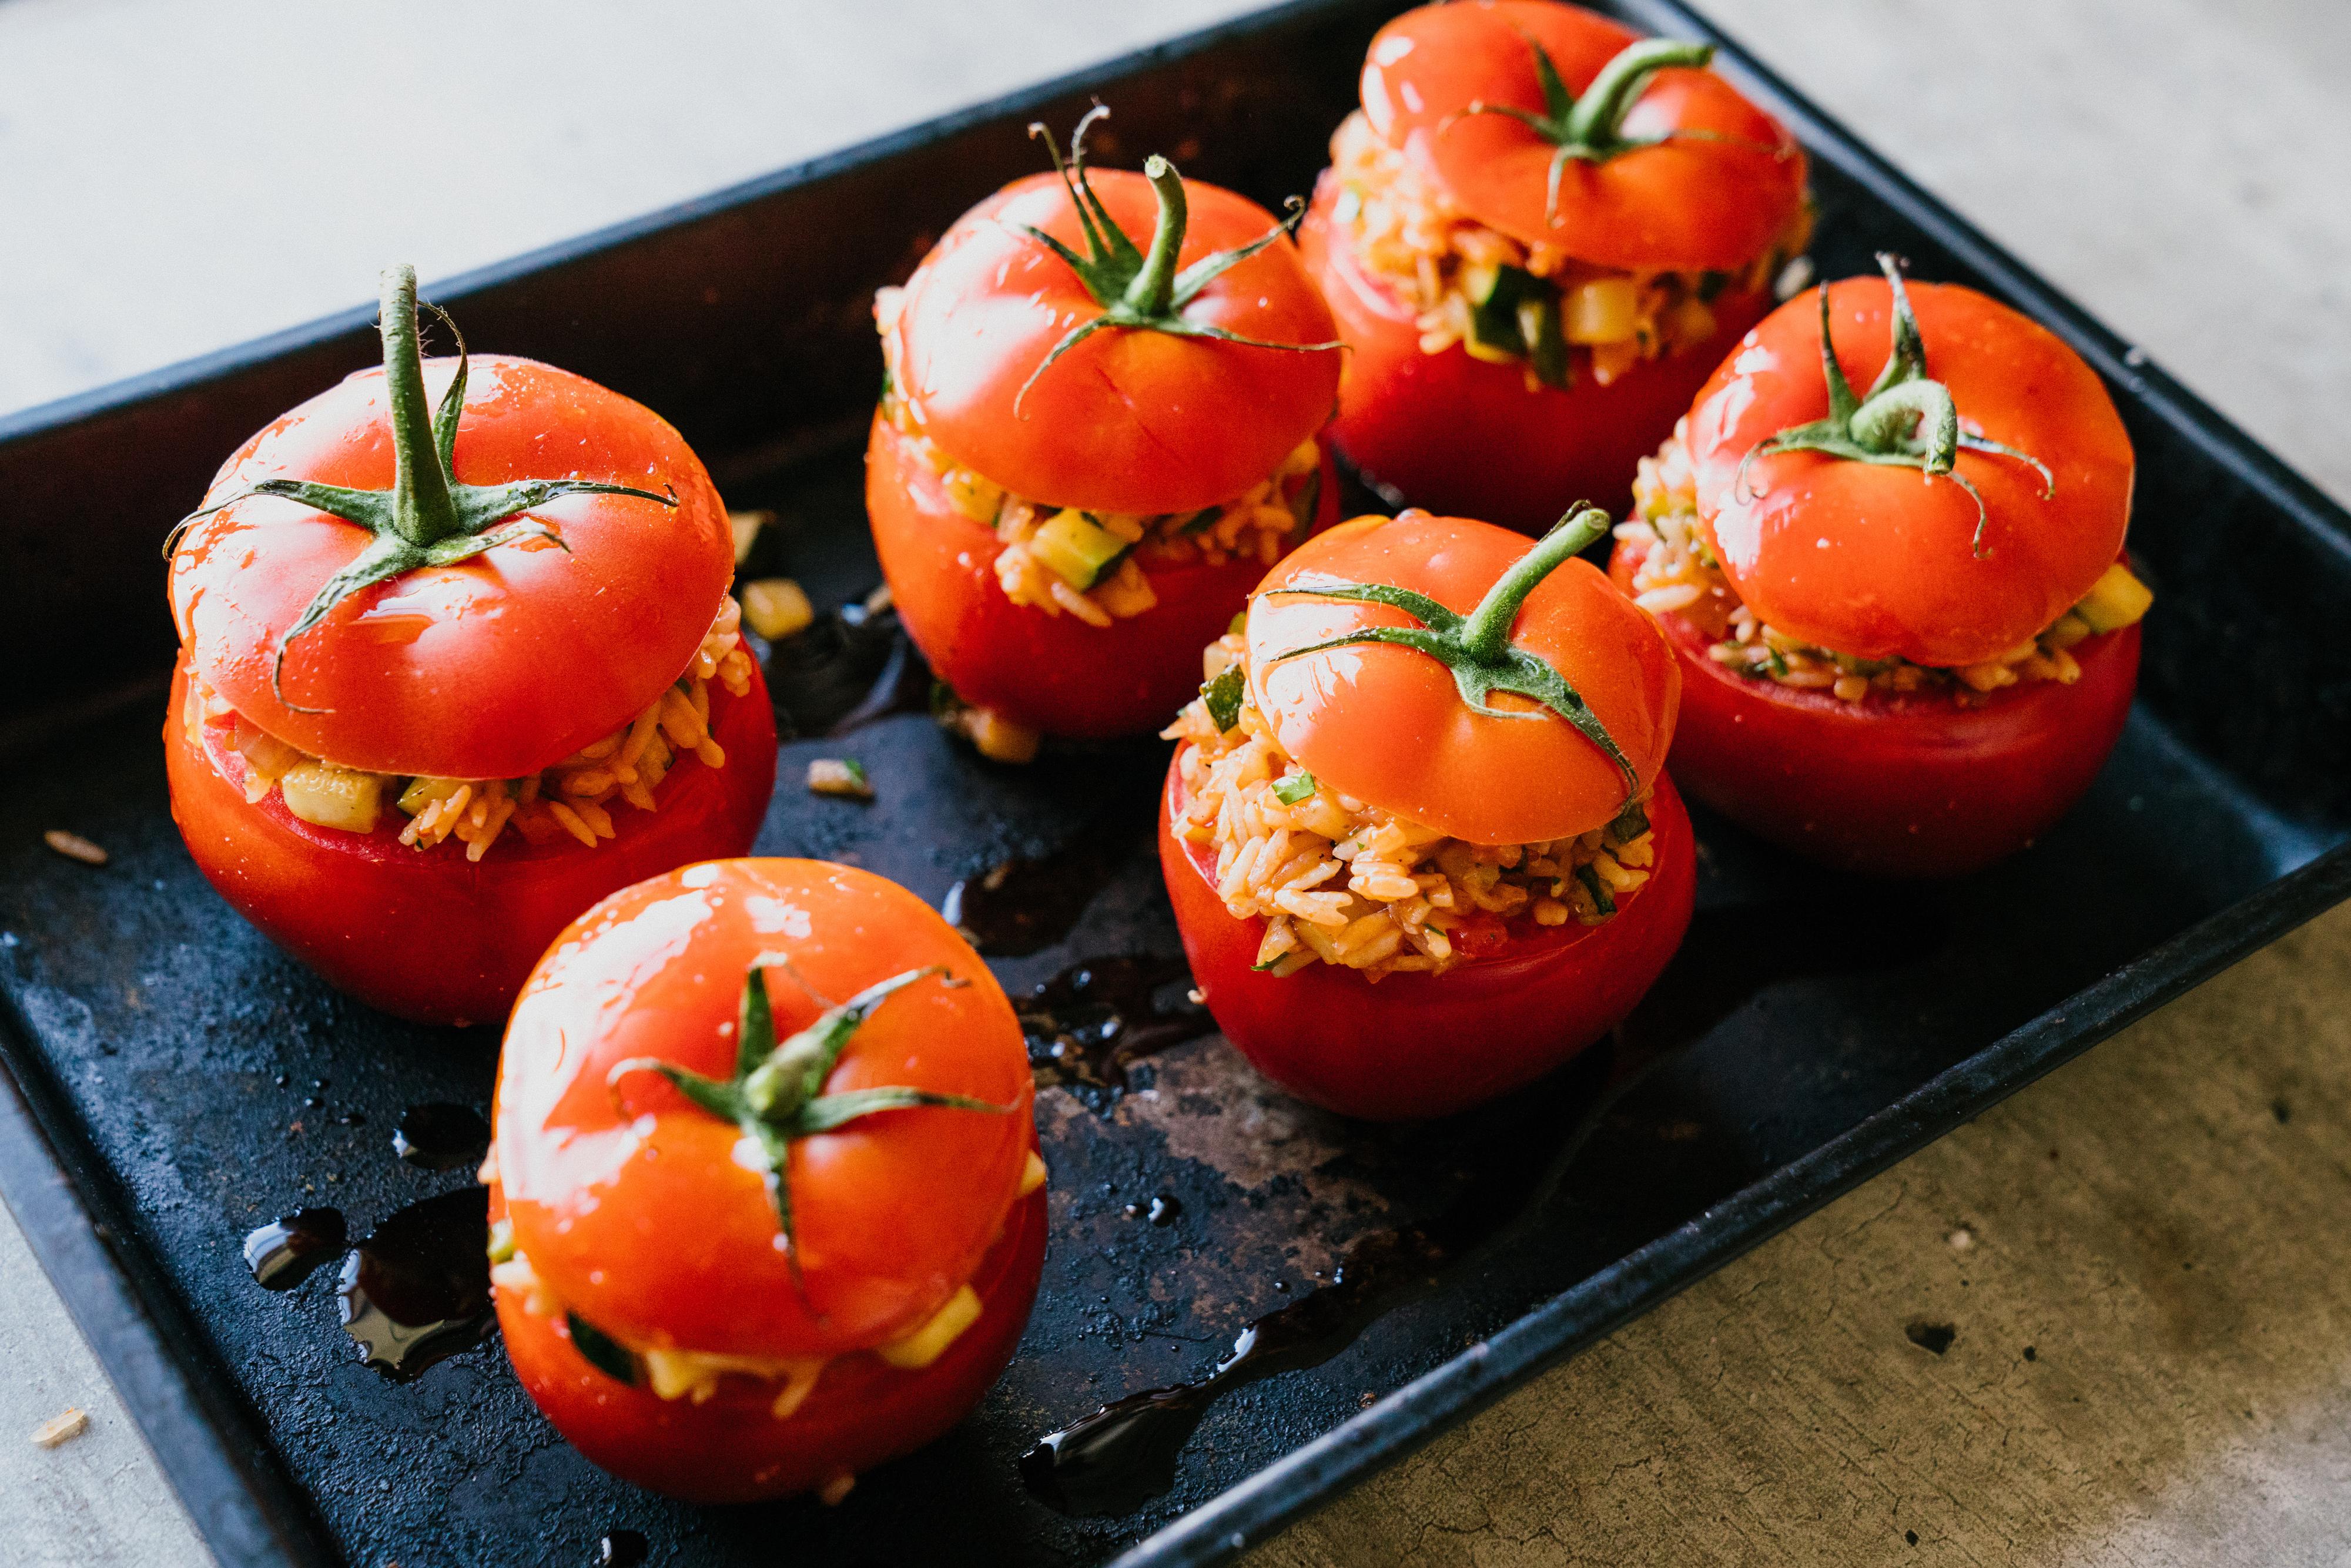 Varm ovnen til 180 grader. Sett tomatene over i en passende ildfast form og fyll dem godt opp med risblandingen. Drypp over litt olivenolje og sett på «tomatlokkene», avslutt med et par nye dråper olivenolje og bak tomatene midt i ovnen i cirka 40 minutter, eller til tomatene er gylne og flotte - og risen er mør.